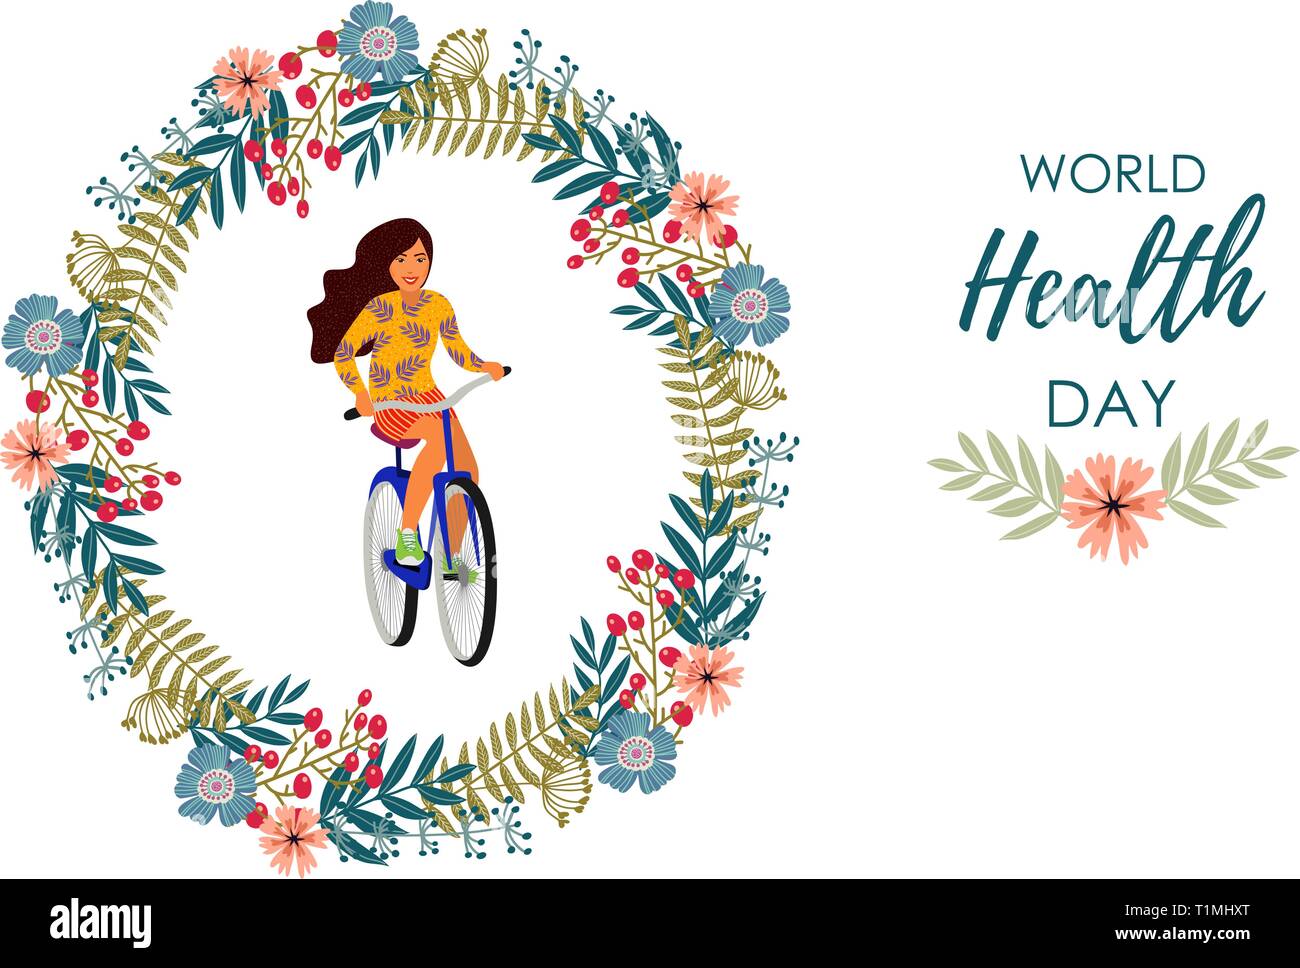 Uno stile di vita sano. Vettore illustrazione carino con ragazza su una bicicletta all'interno di una corona di fiori su uno sfondo bianco. Illustrazione Vettoriale